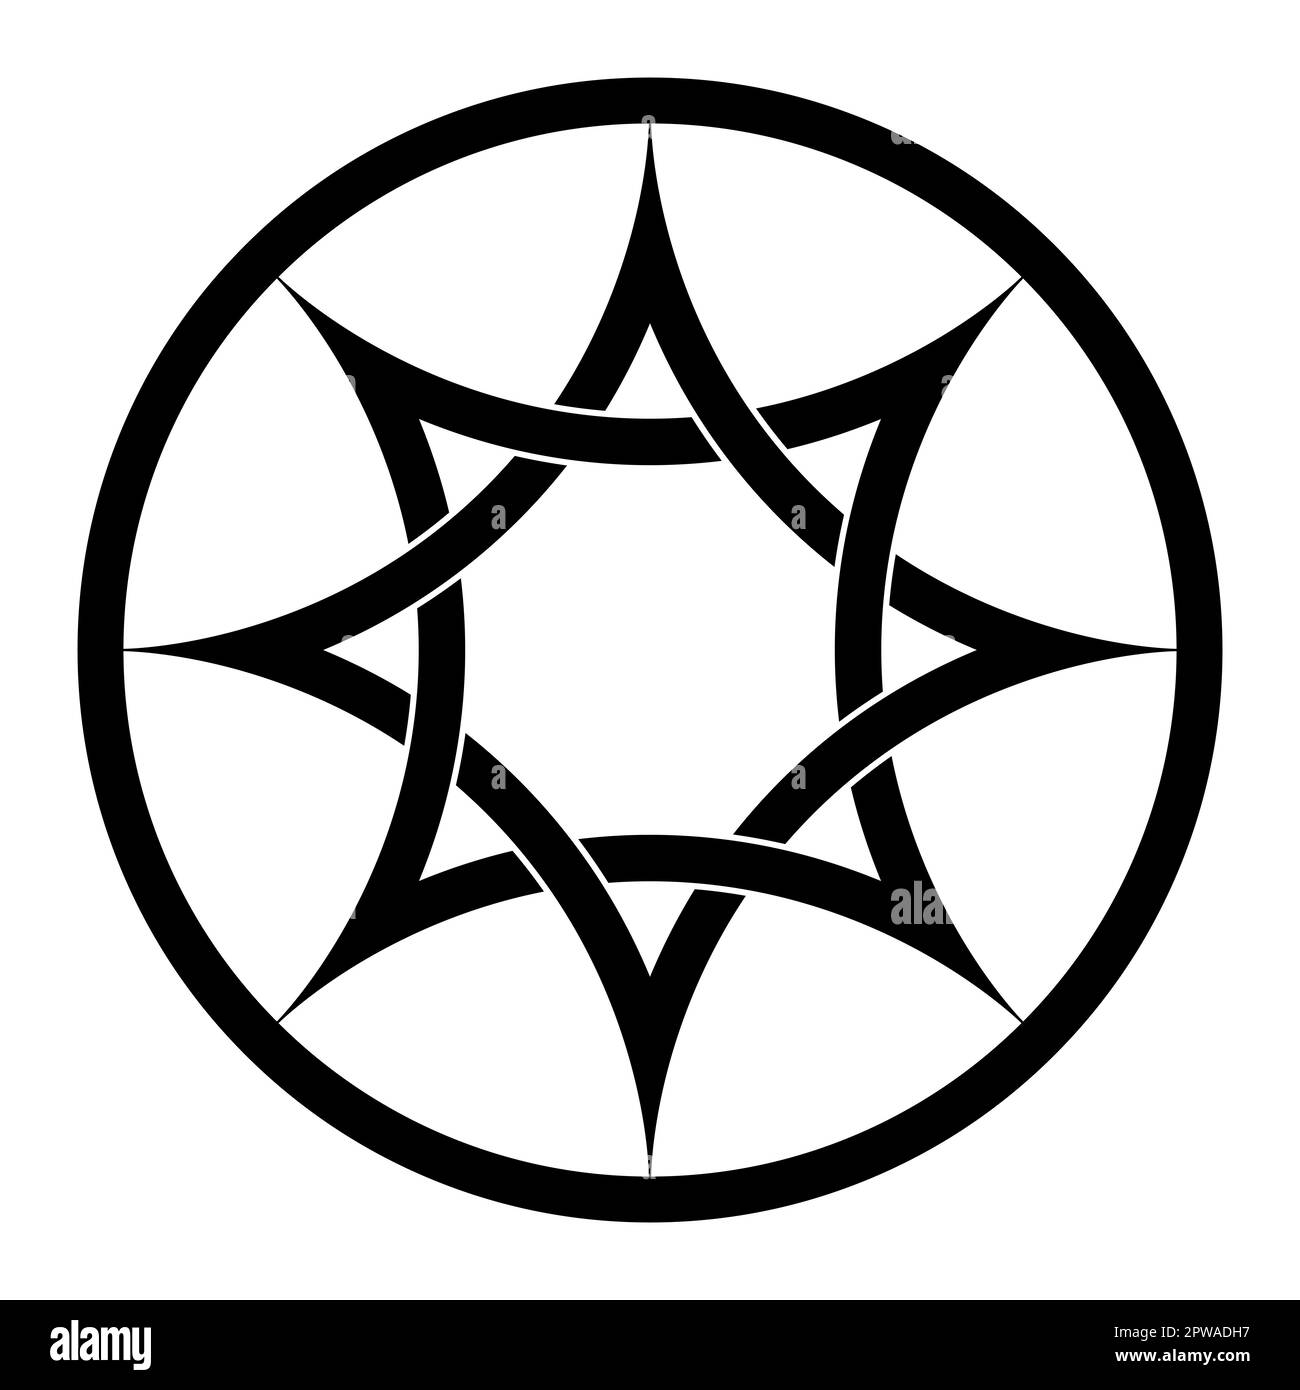 Octagramm mit verschachtelten gebogenen Bögen, ein achtzackiger Stern in einem Kreisrahmen. Zwei miteinander verwobene Quadrate, basierend auf dem Stern der Venus. Stockfoto